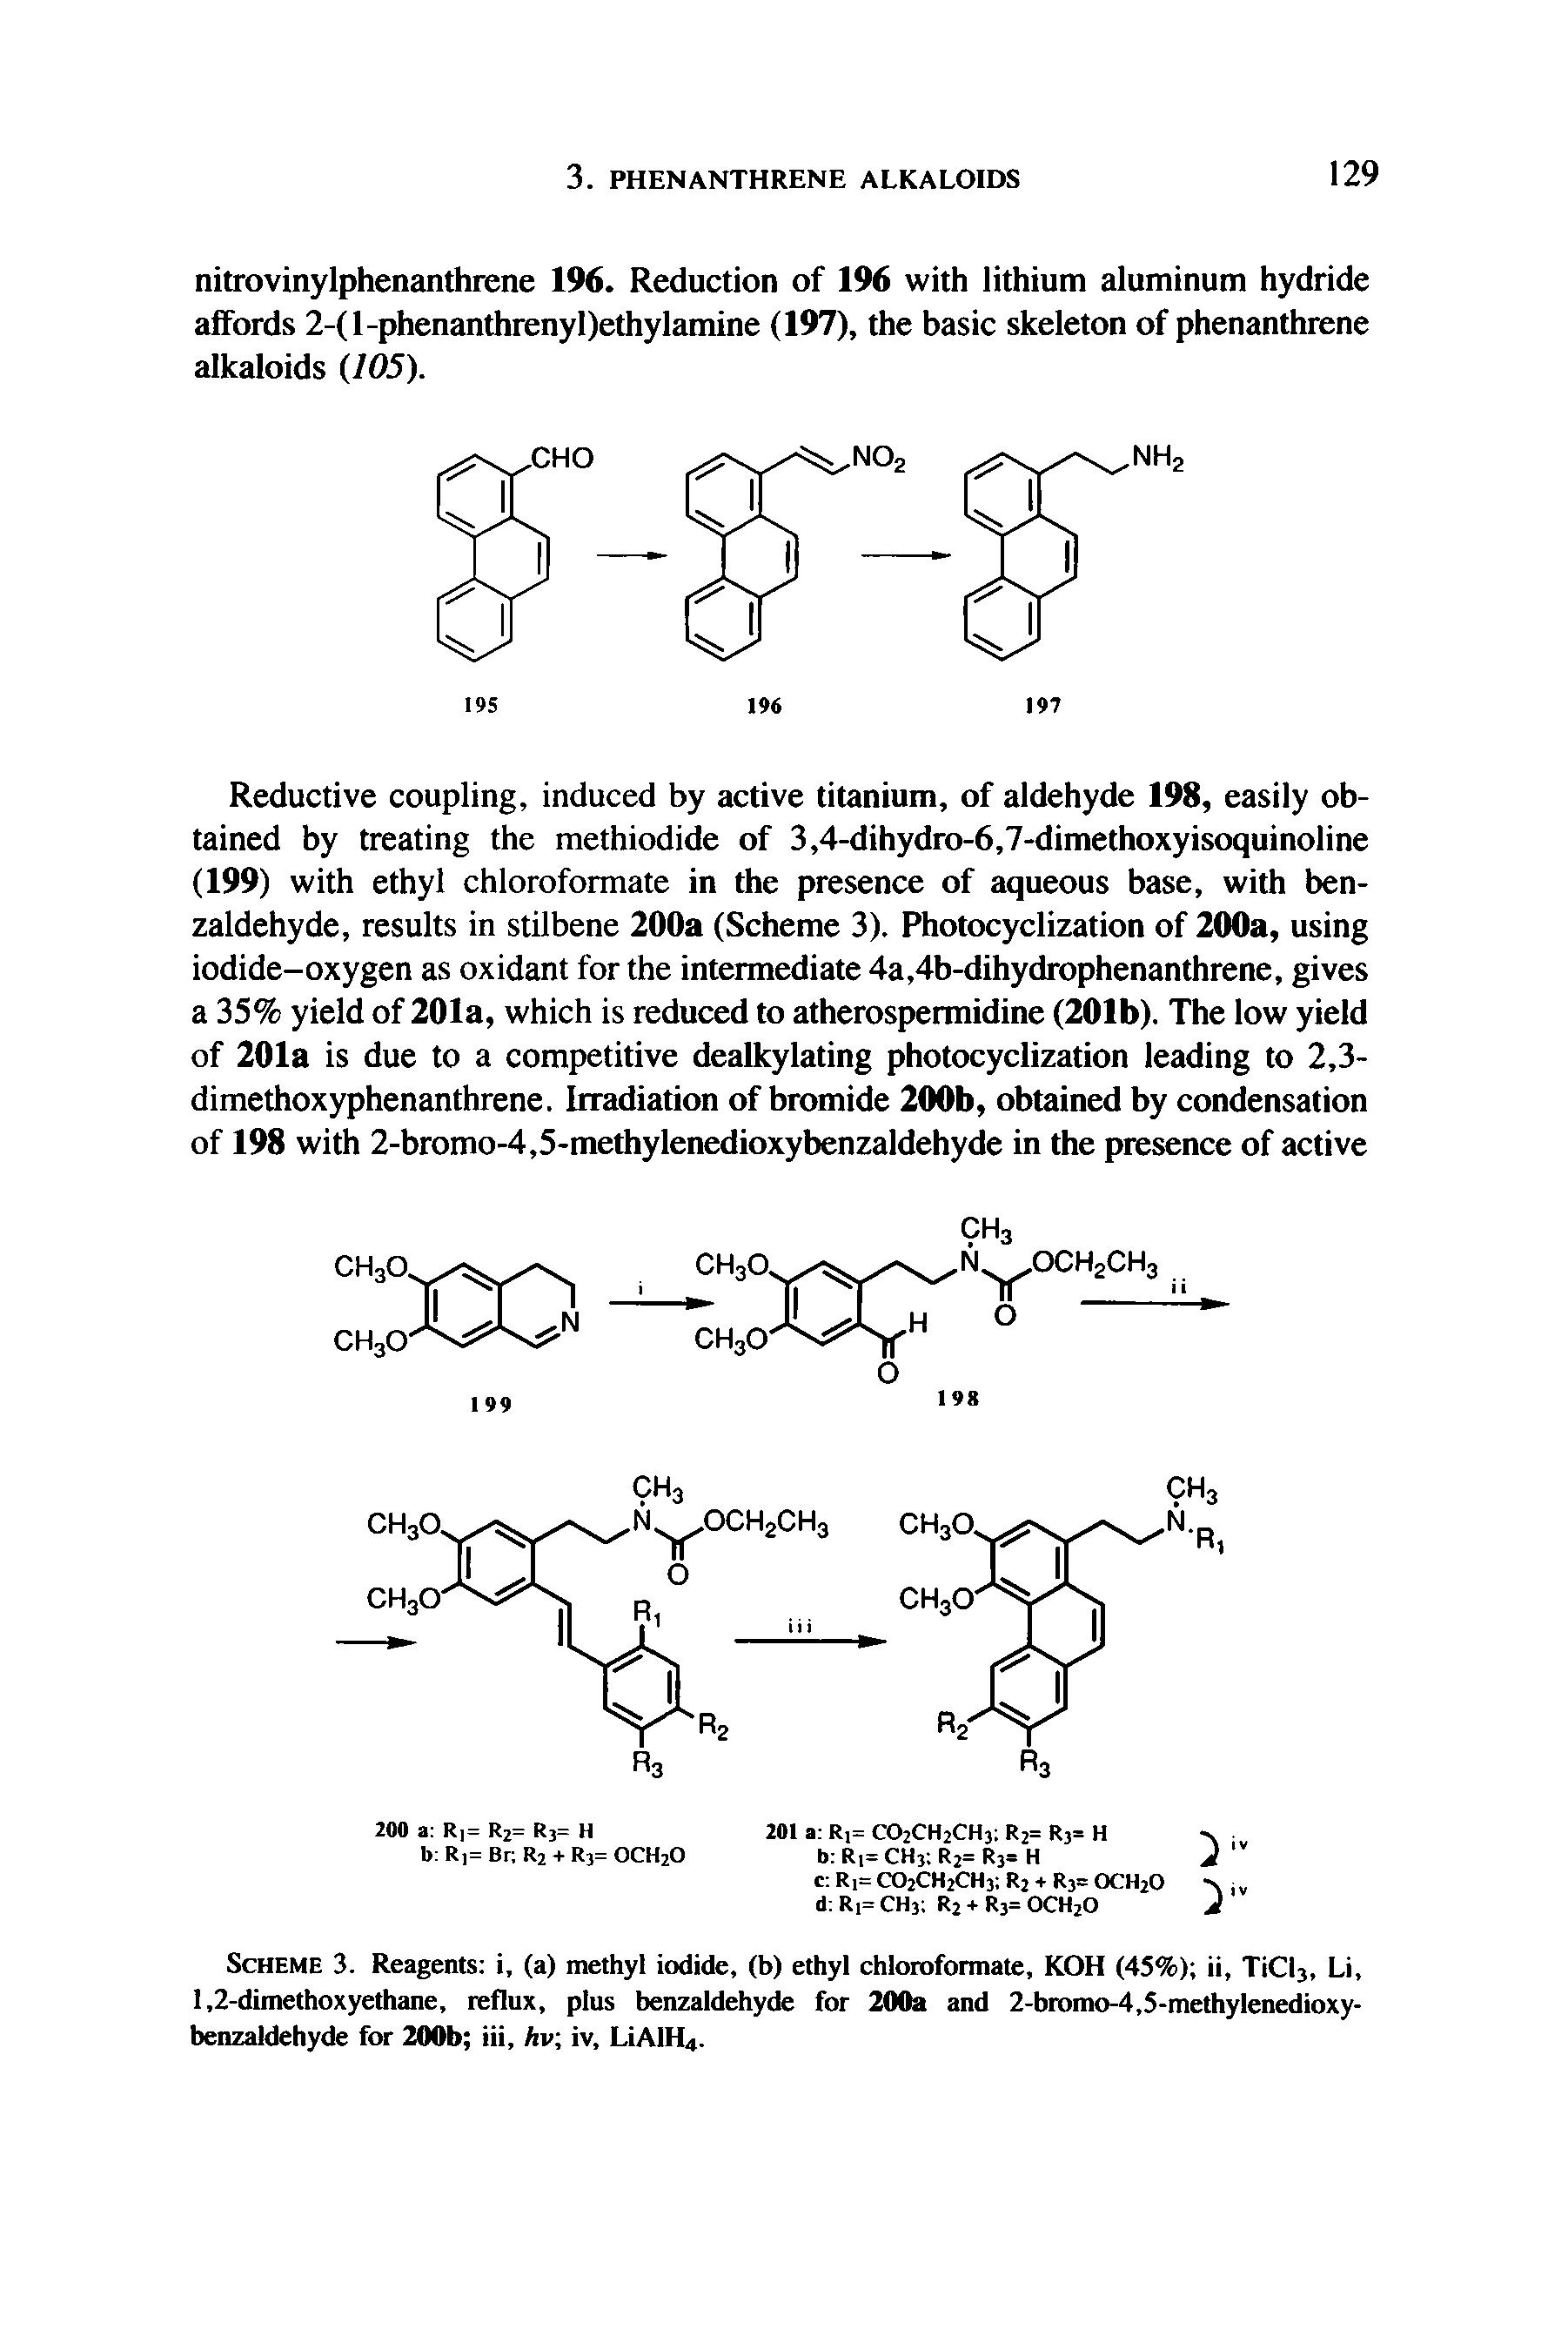 Scheme 3. Reagents i, (a) methyl iodide, (b) ethyl chloroformate, KOH (45%) ii, TiCb, Li, 1,2-dimethoxyethane, reflux, plus benzaldehyde for 200a and 2-bromo-4,5-methylenedioxy-benzaldehyde for 200b iii, hv iv, L1A1H4.